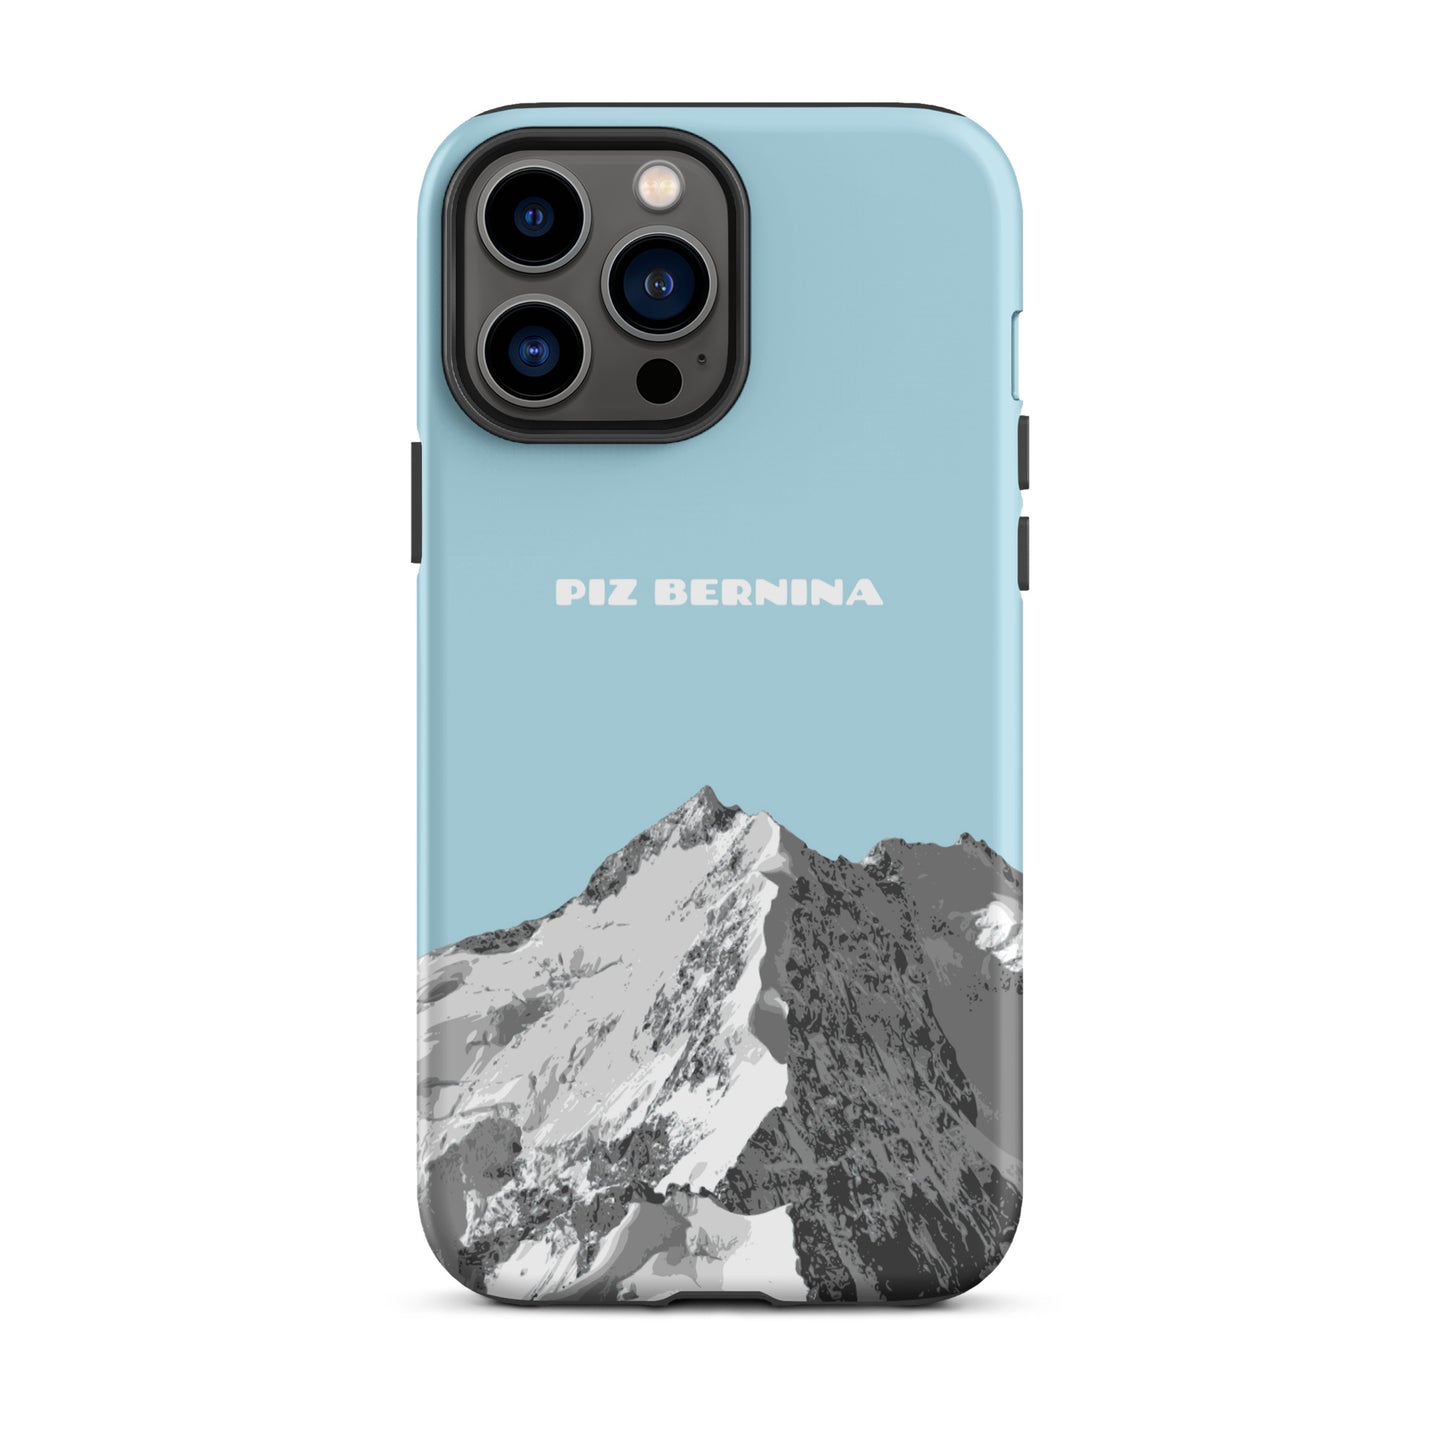 Hülle für das iPhone 13 Pro Max von Apple in der Farbe Hellblau, dass den Piz Bernina in Graubünden zeigt.